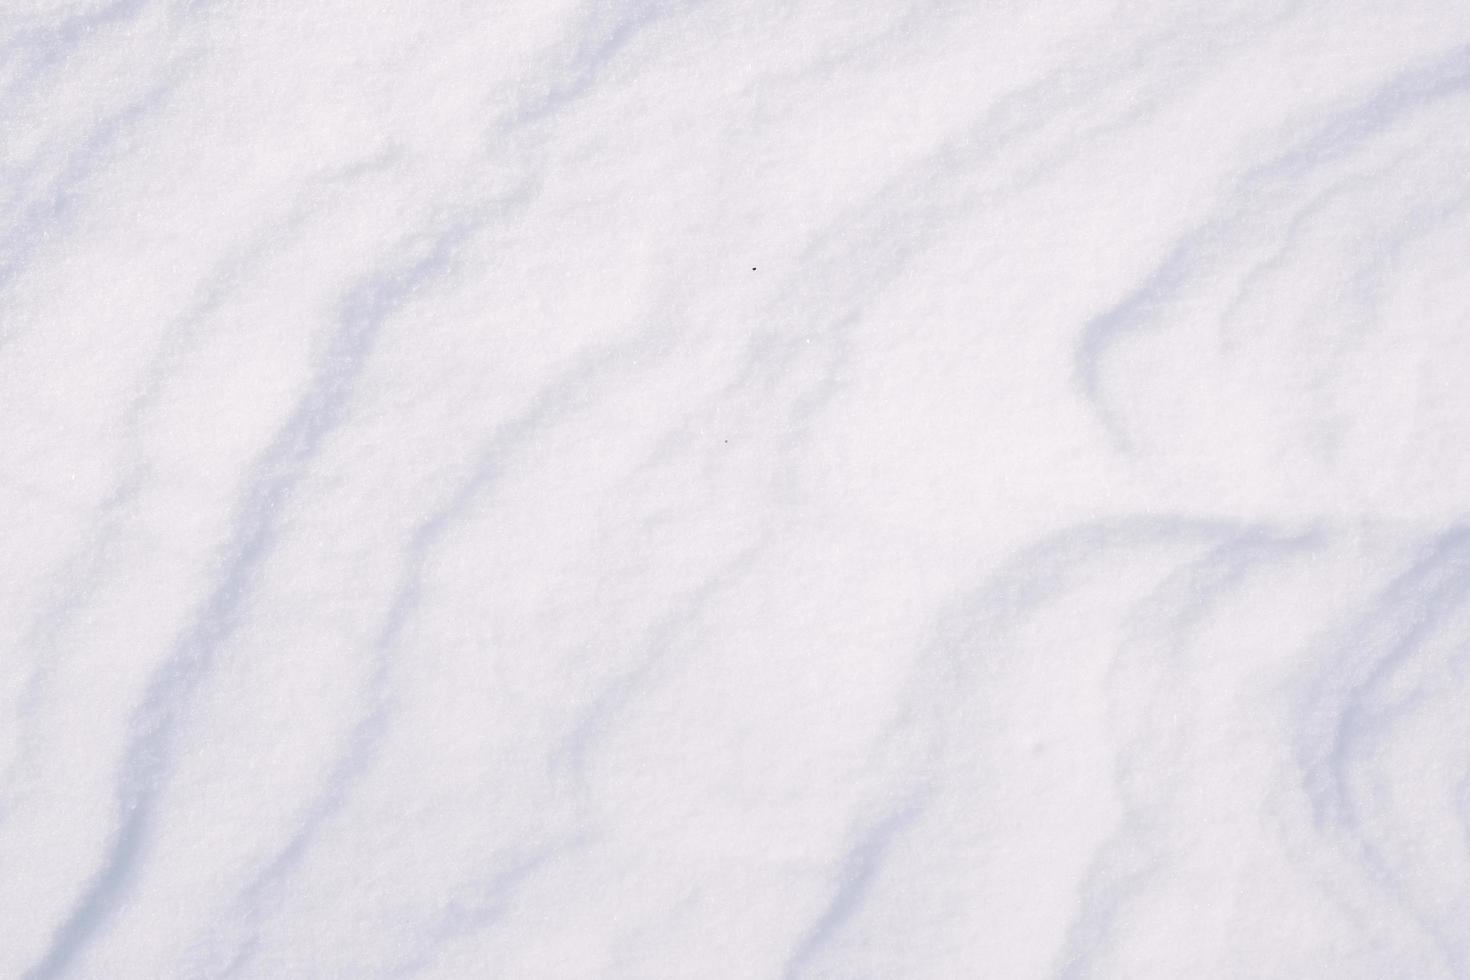 schone witte sneeuwtextuur gemaakt van ijskristallen foto